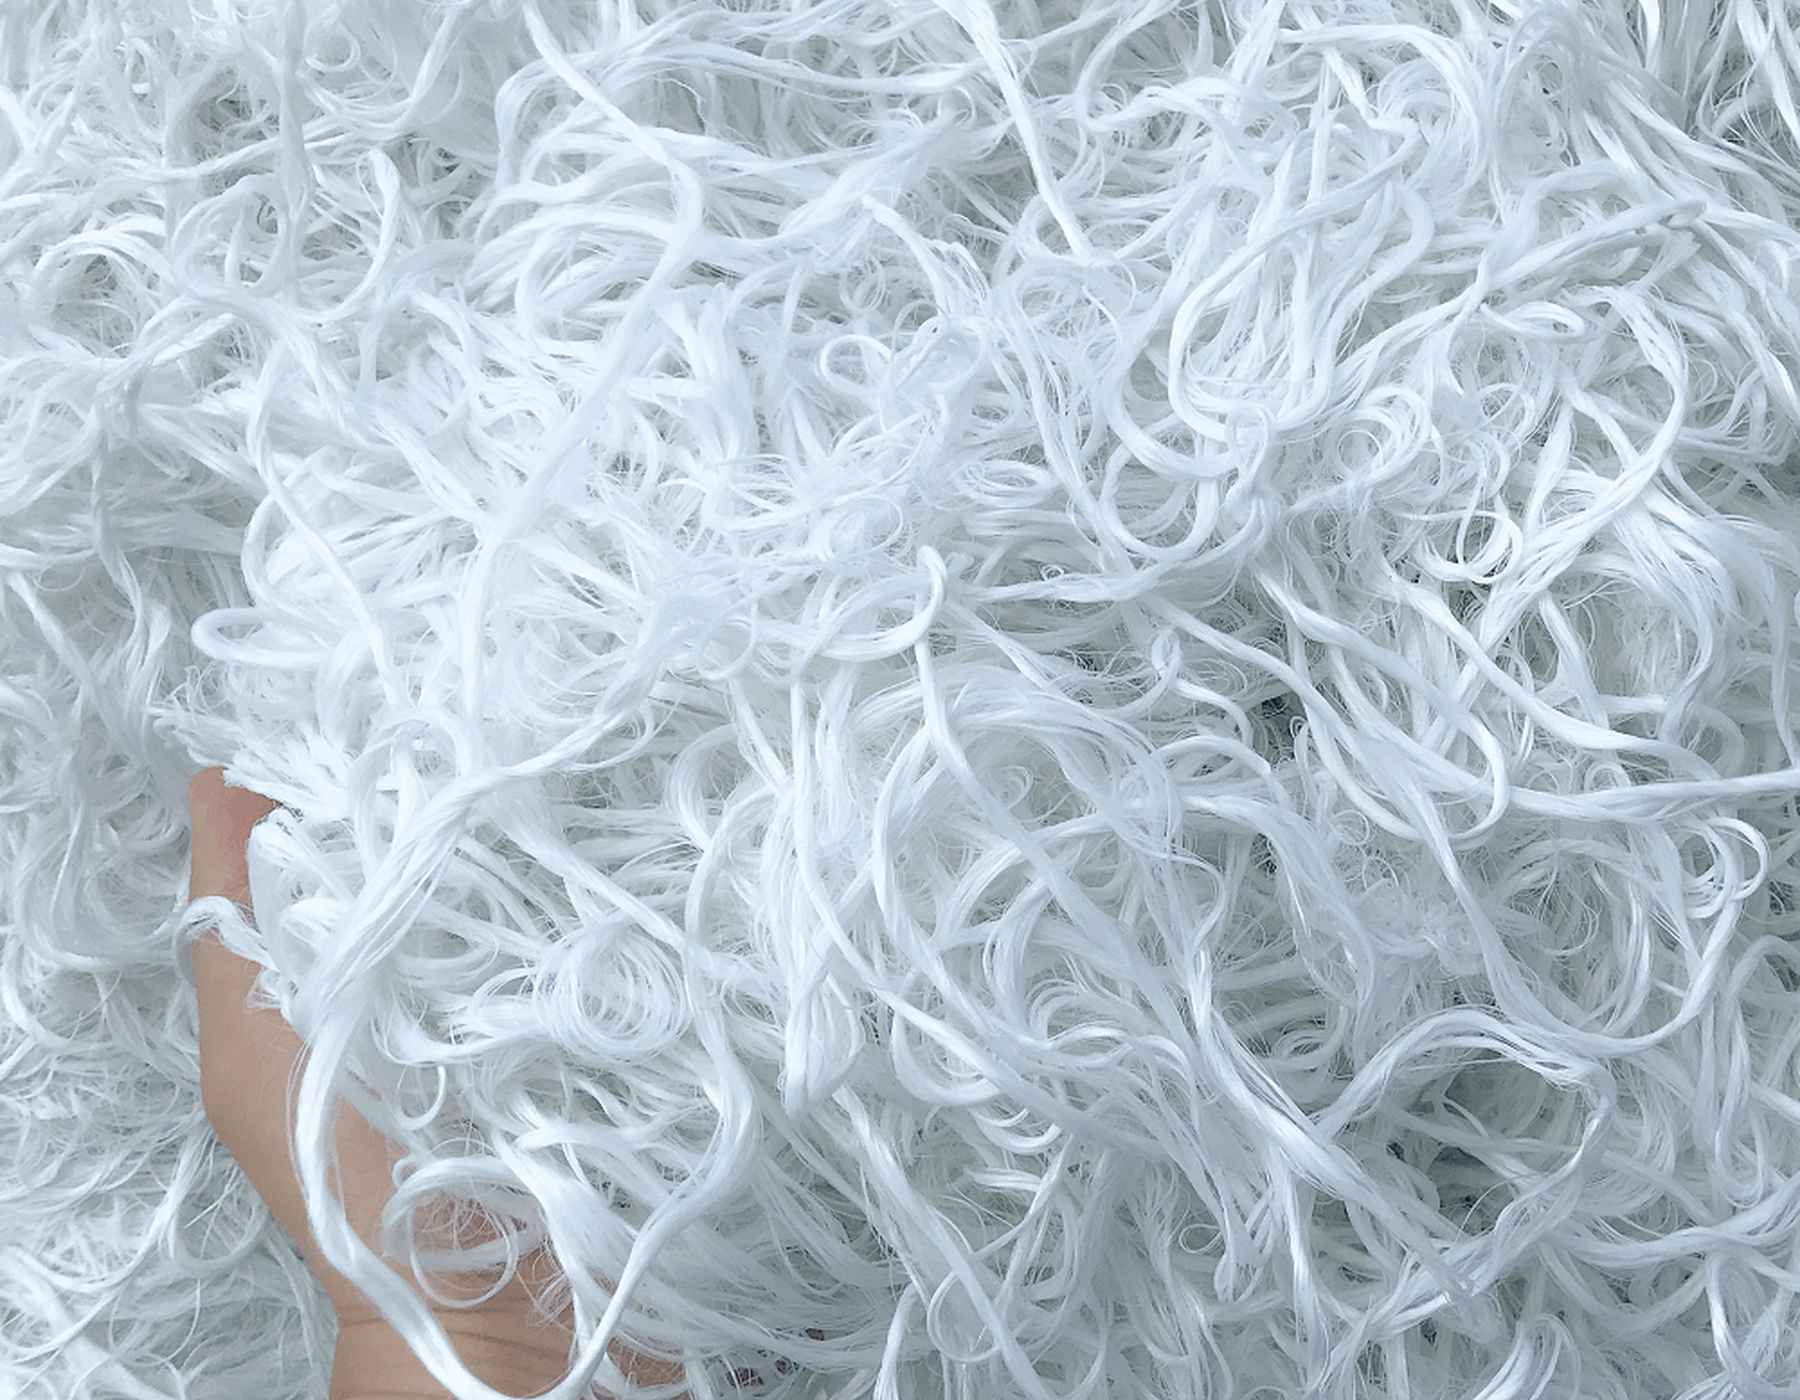 Brins de polyester recyclé dans un tas.